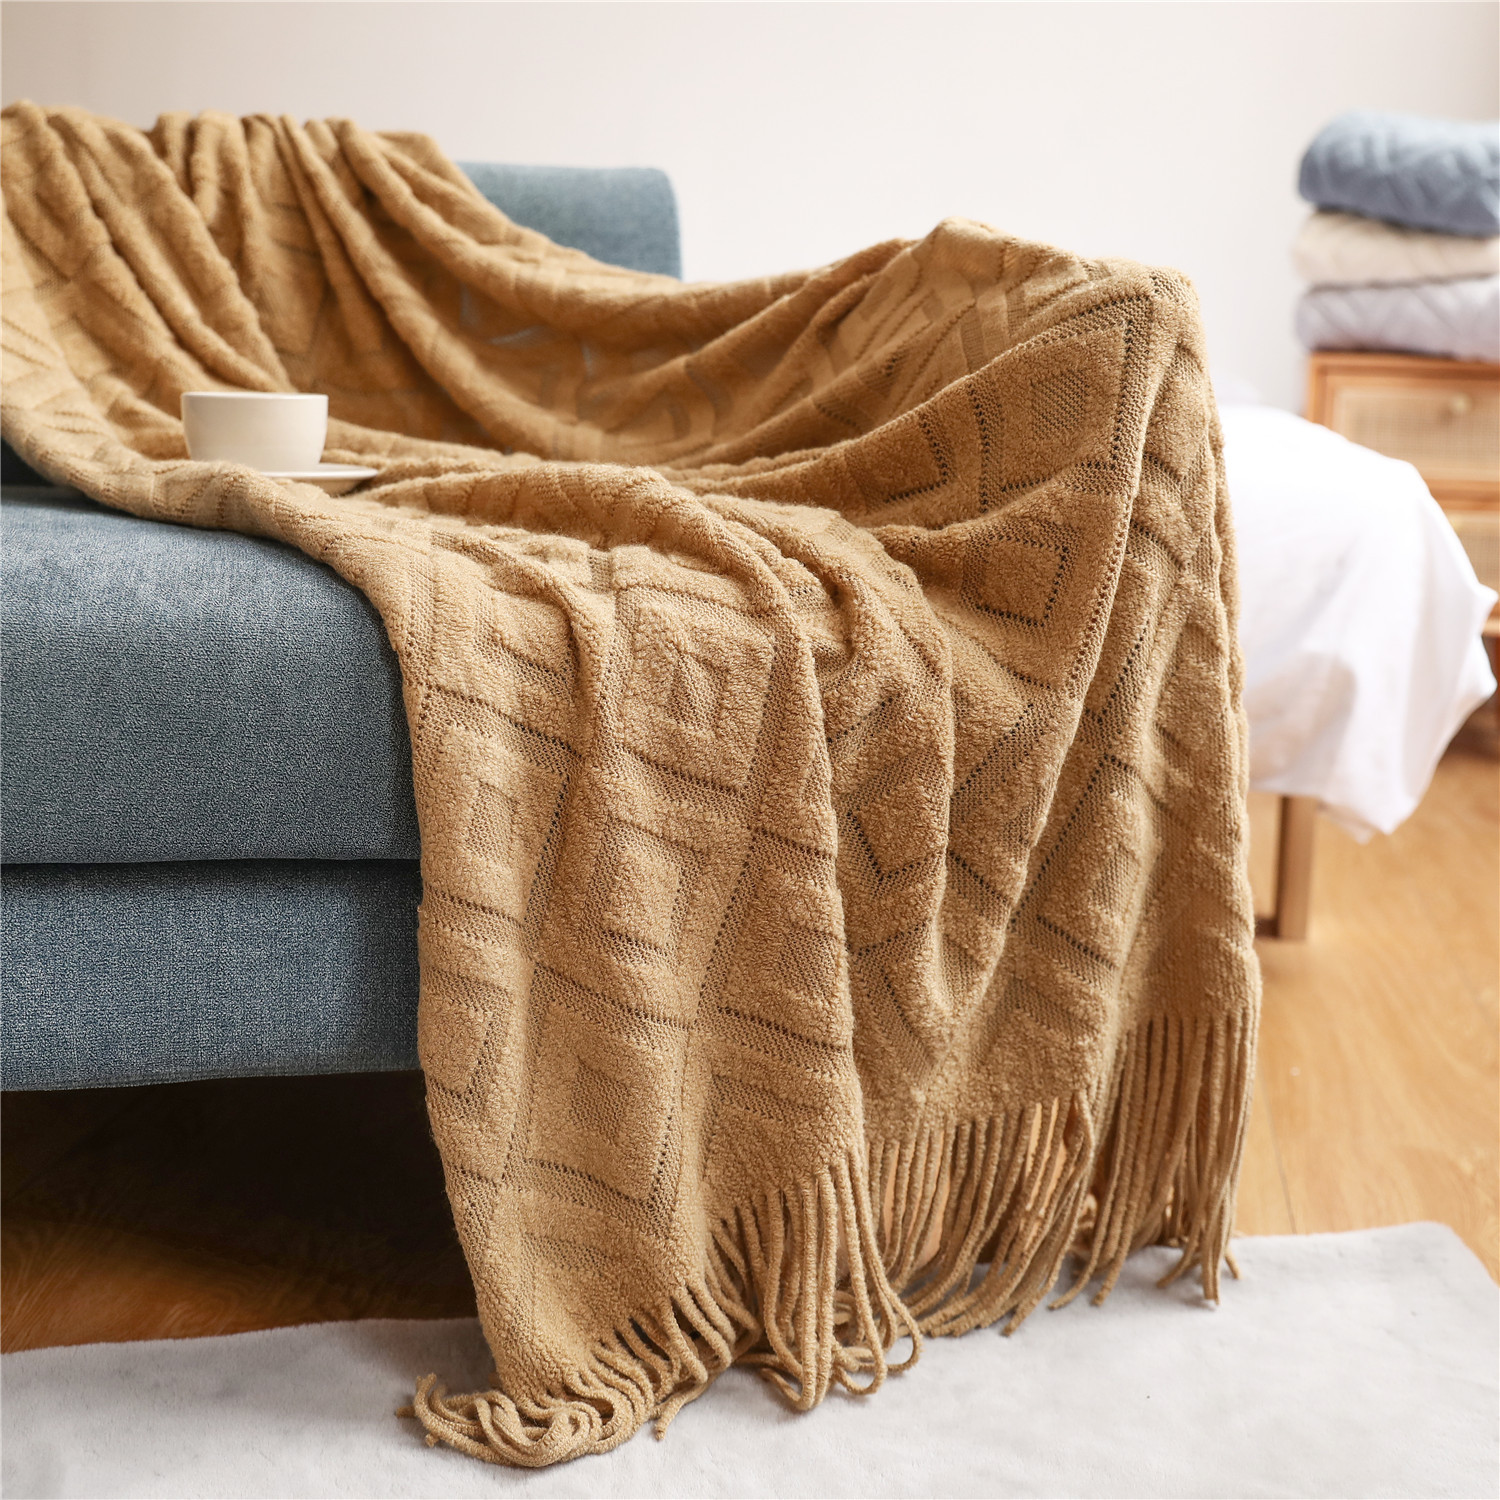 提花針織毯歐風春秋純色款式 沙發蓋毯午睡毯子